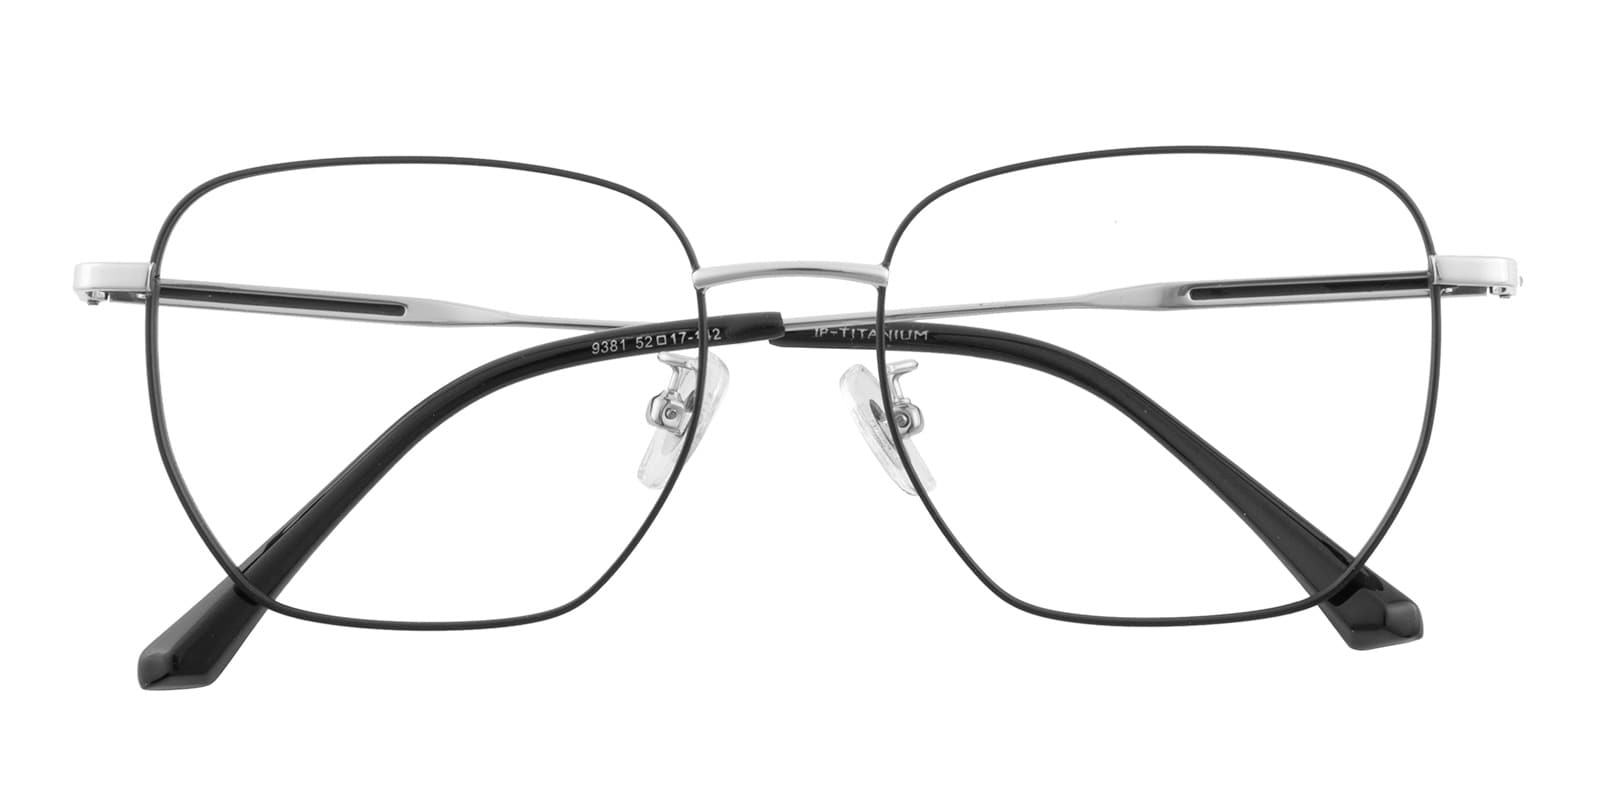 Polygon Eyeglasses, Full Frame Black/Silver Titanium - FT0575